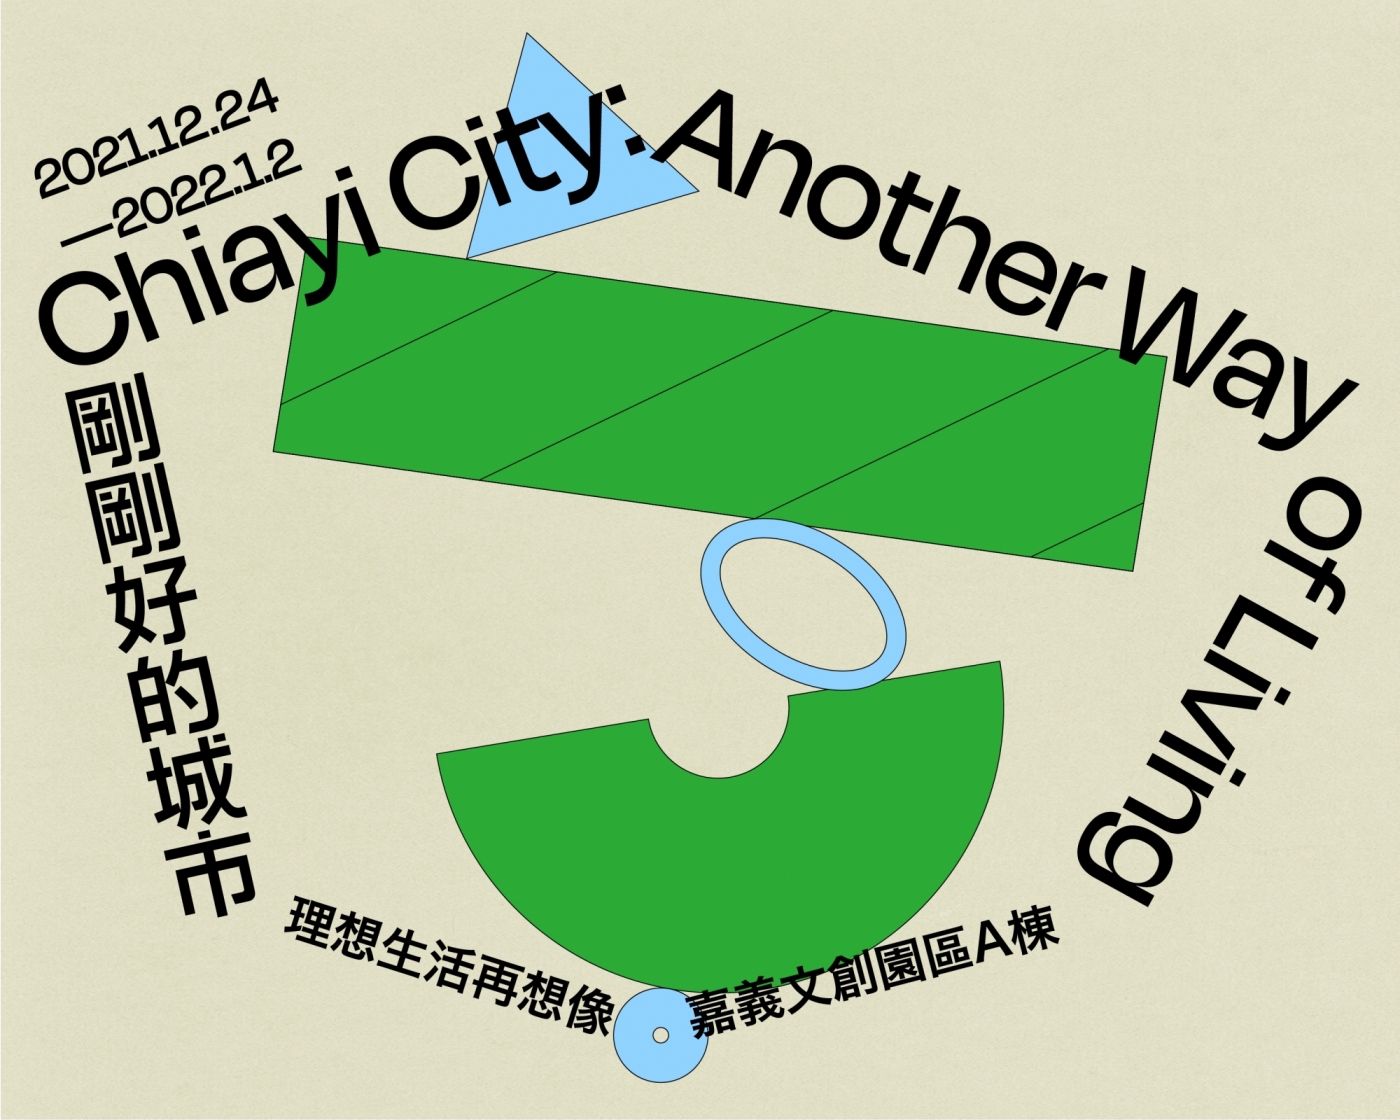 剛剛好的城市：理想生活再想像-嘉義台灣設計展.jpg